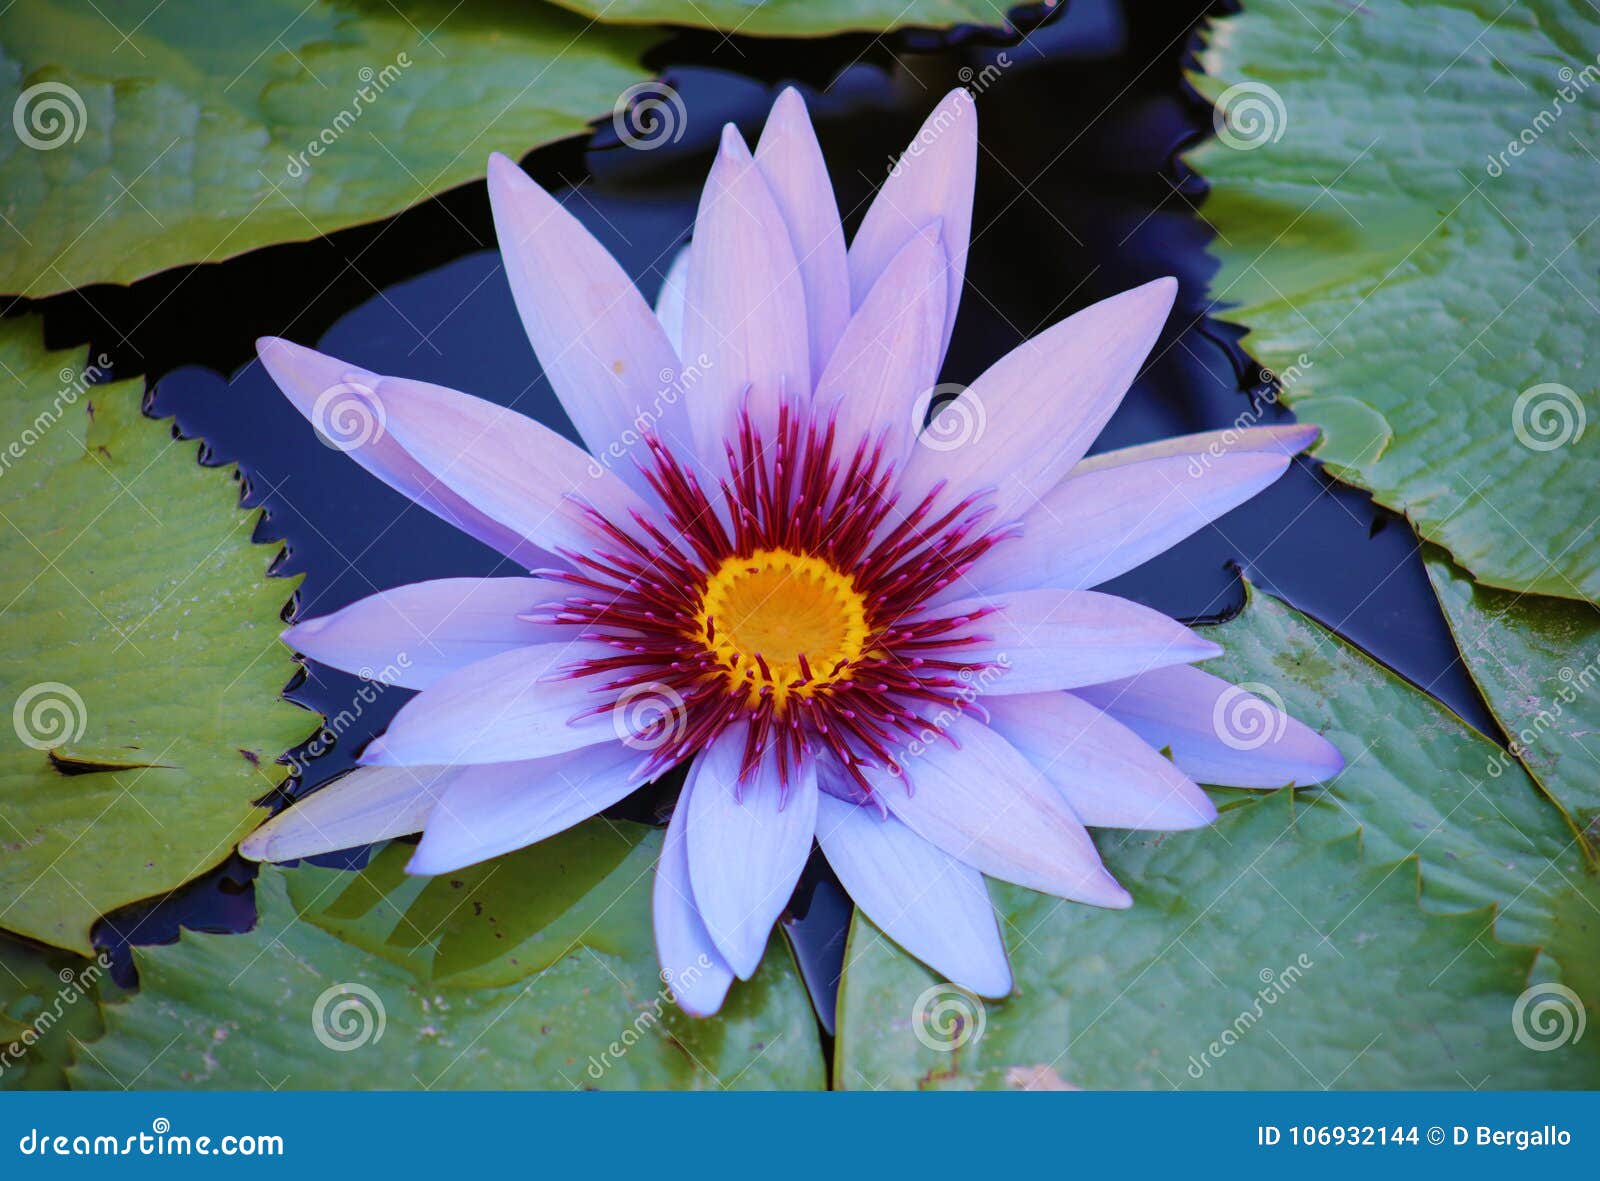 lily flower loto purple flor de loto beautful colors